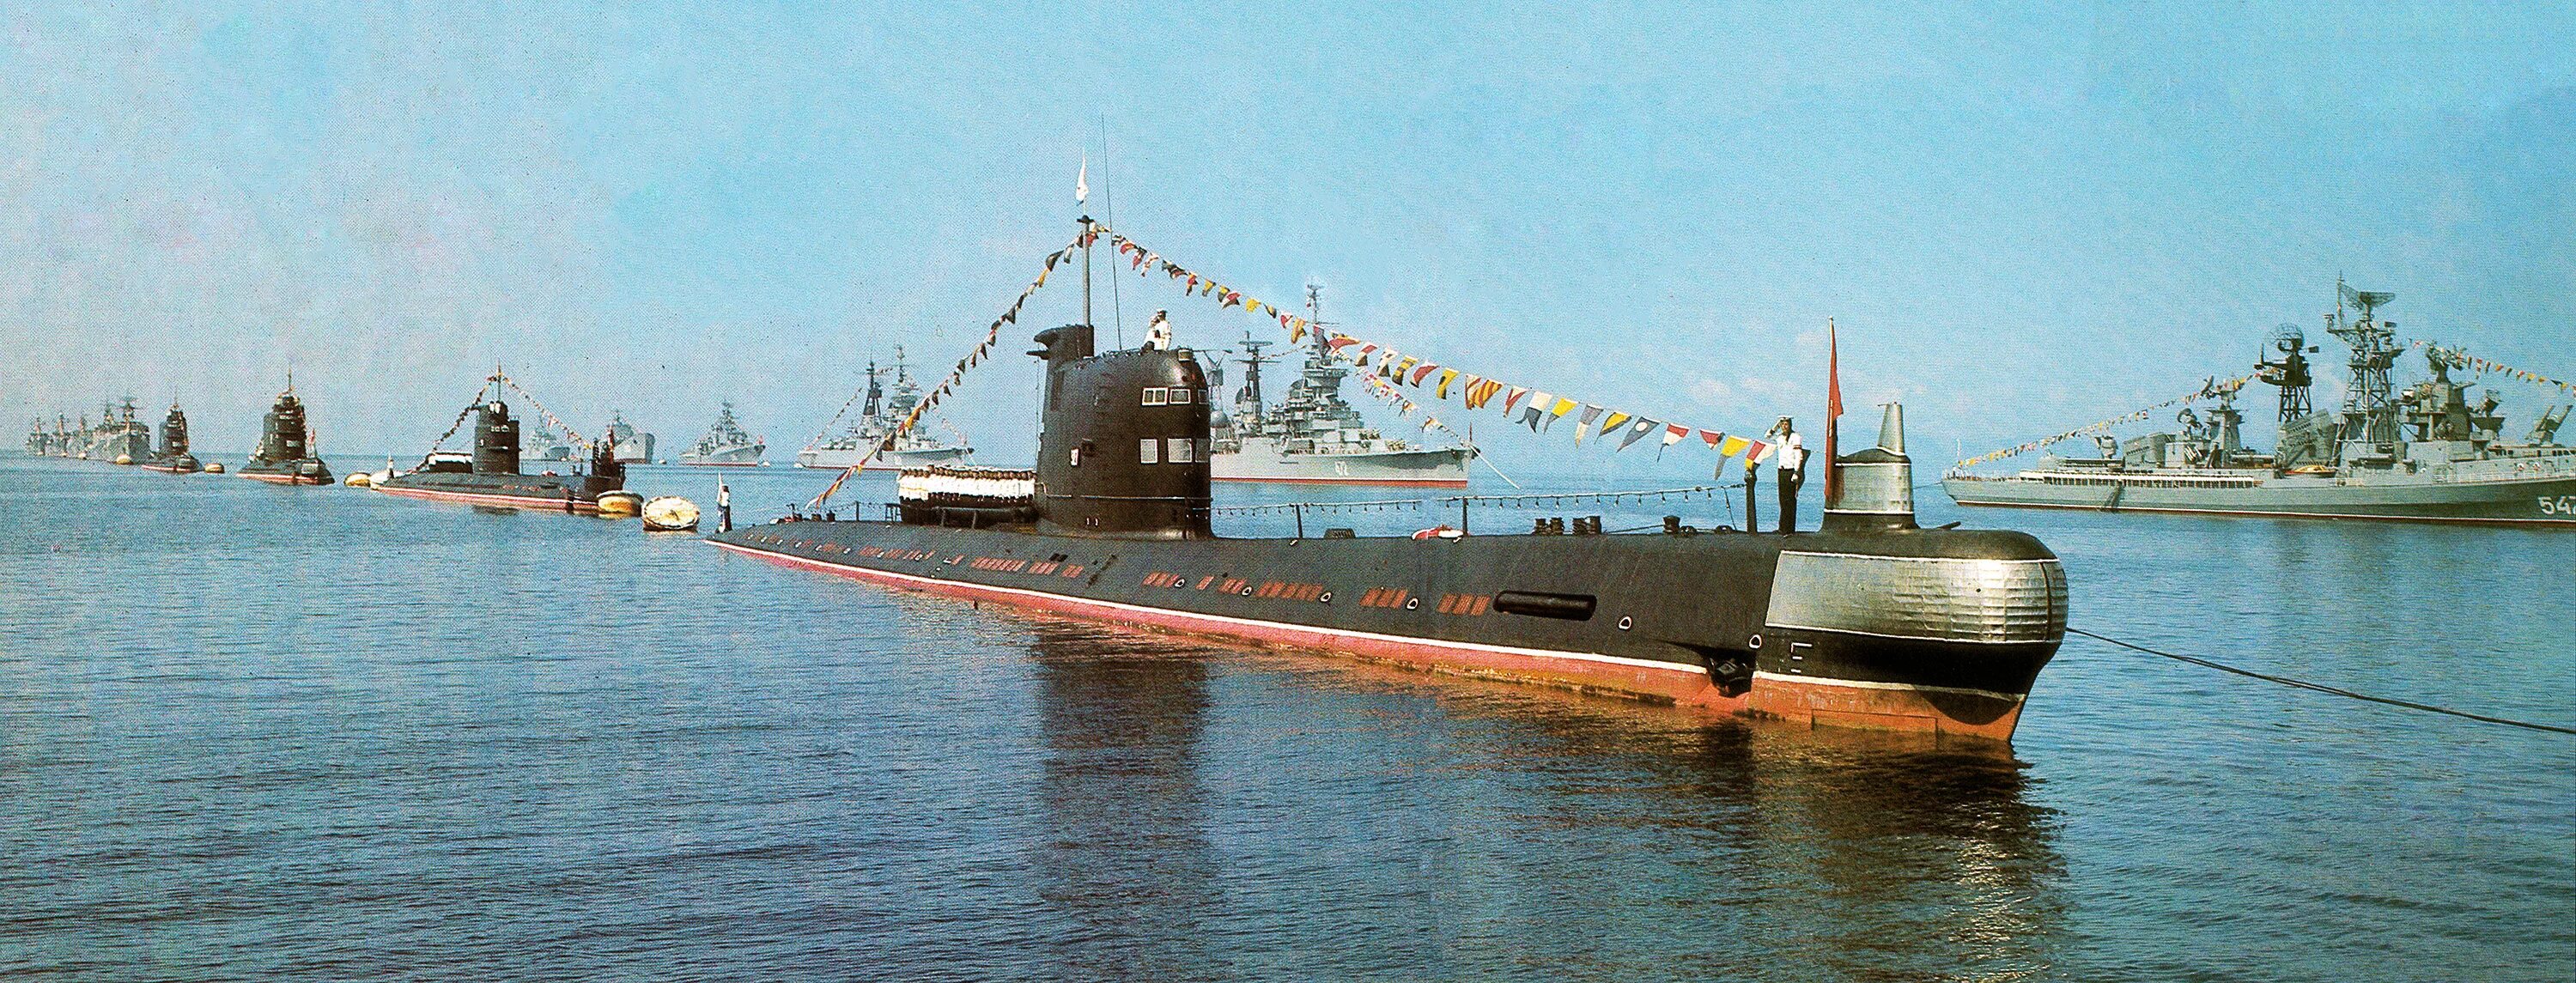 Подводная лодка проект 641. Дизельная подводная лодка 641 Буки. Подводная лодка проекта 641 Фокстрот. Дизель-электрическая подводная лодка проекта 641. Показать пл